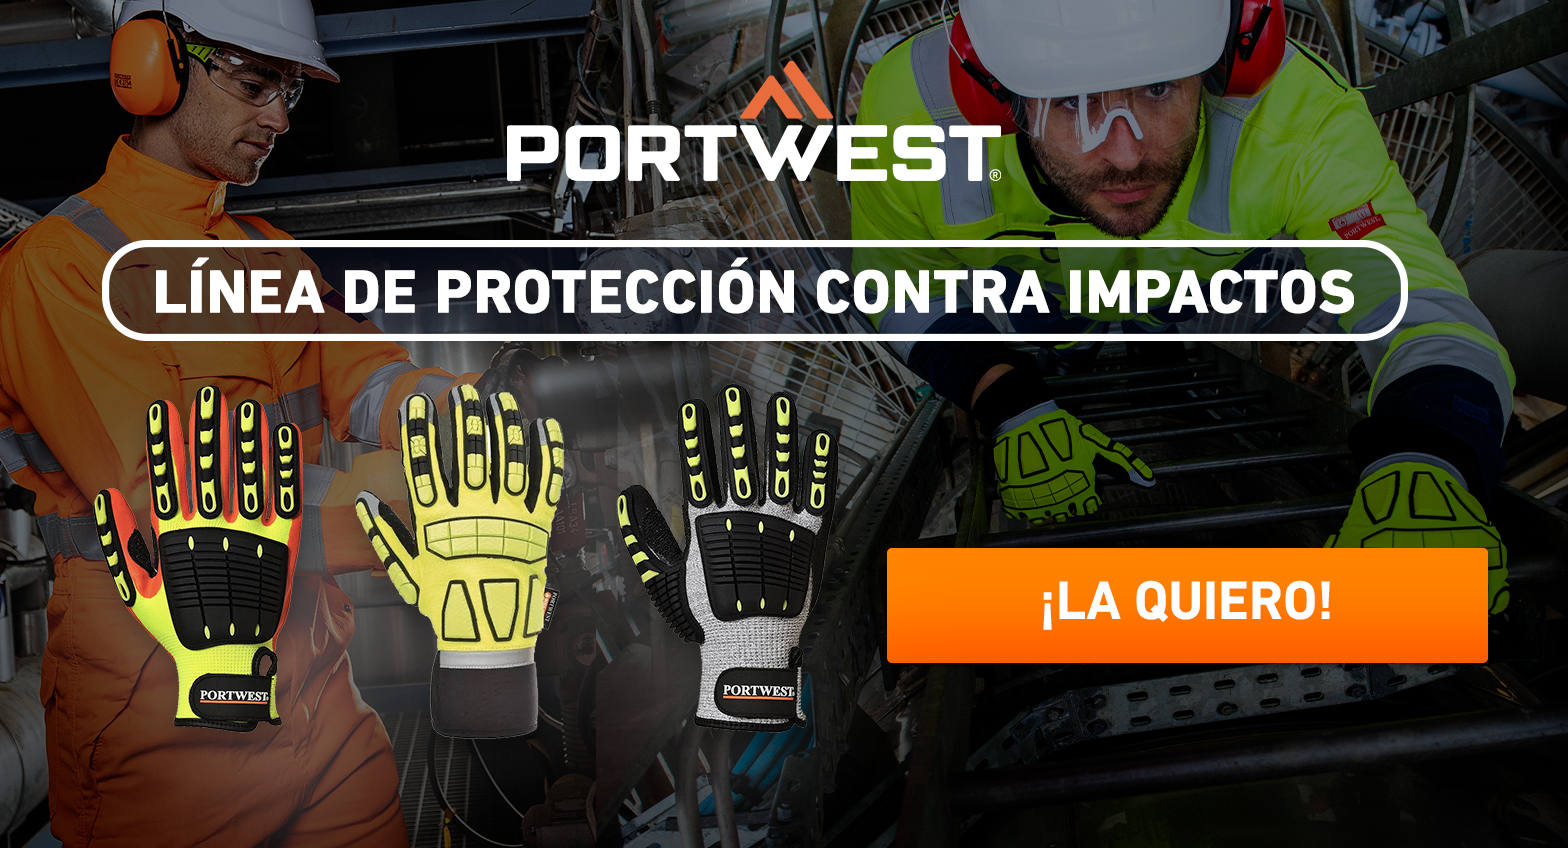 Portwest protección anti impacto